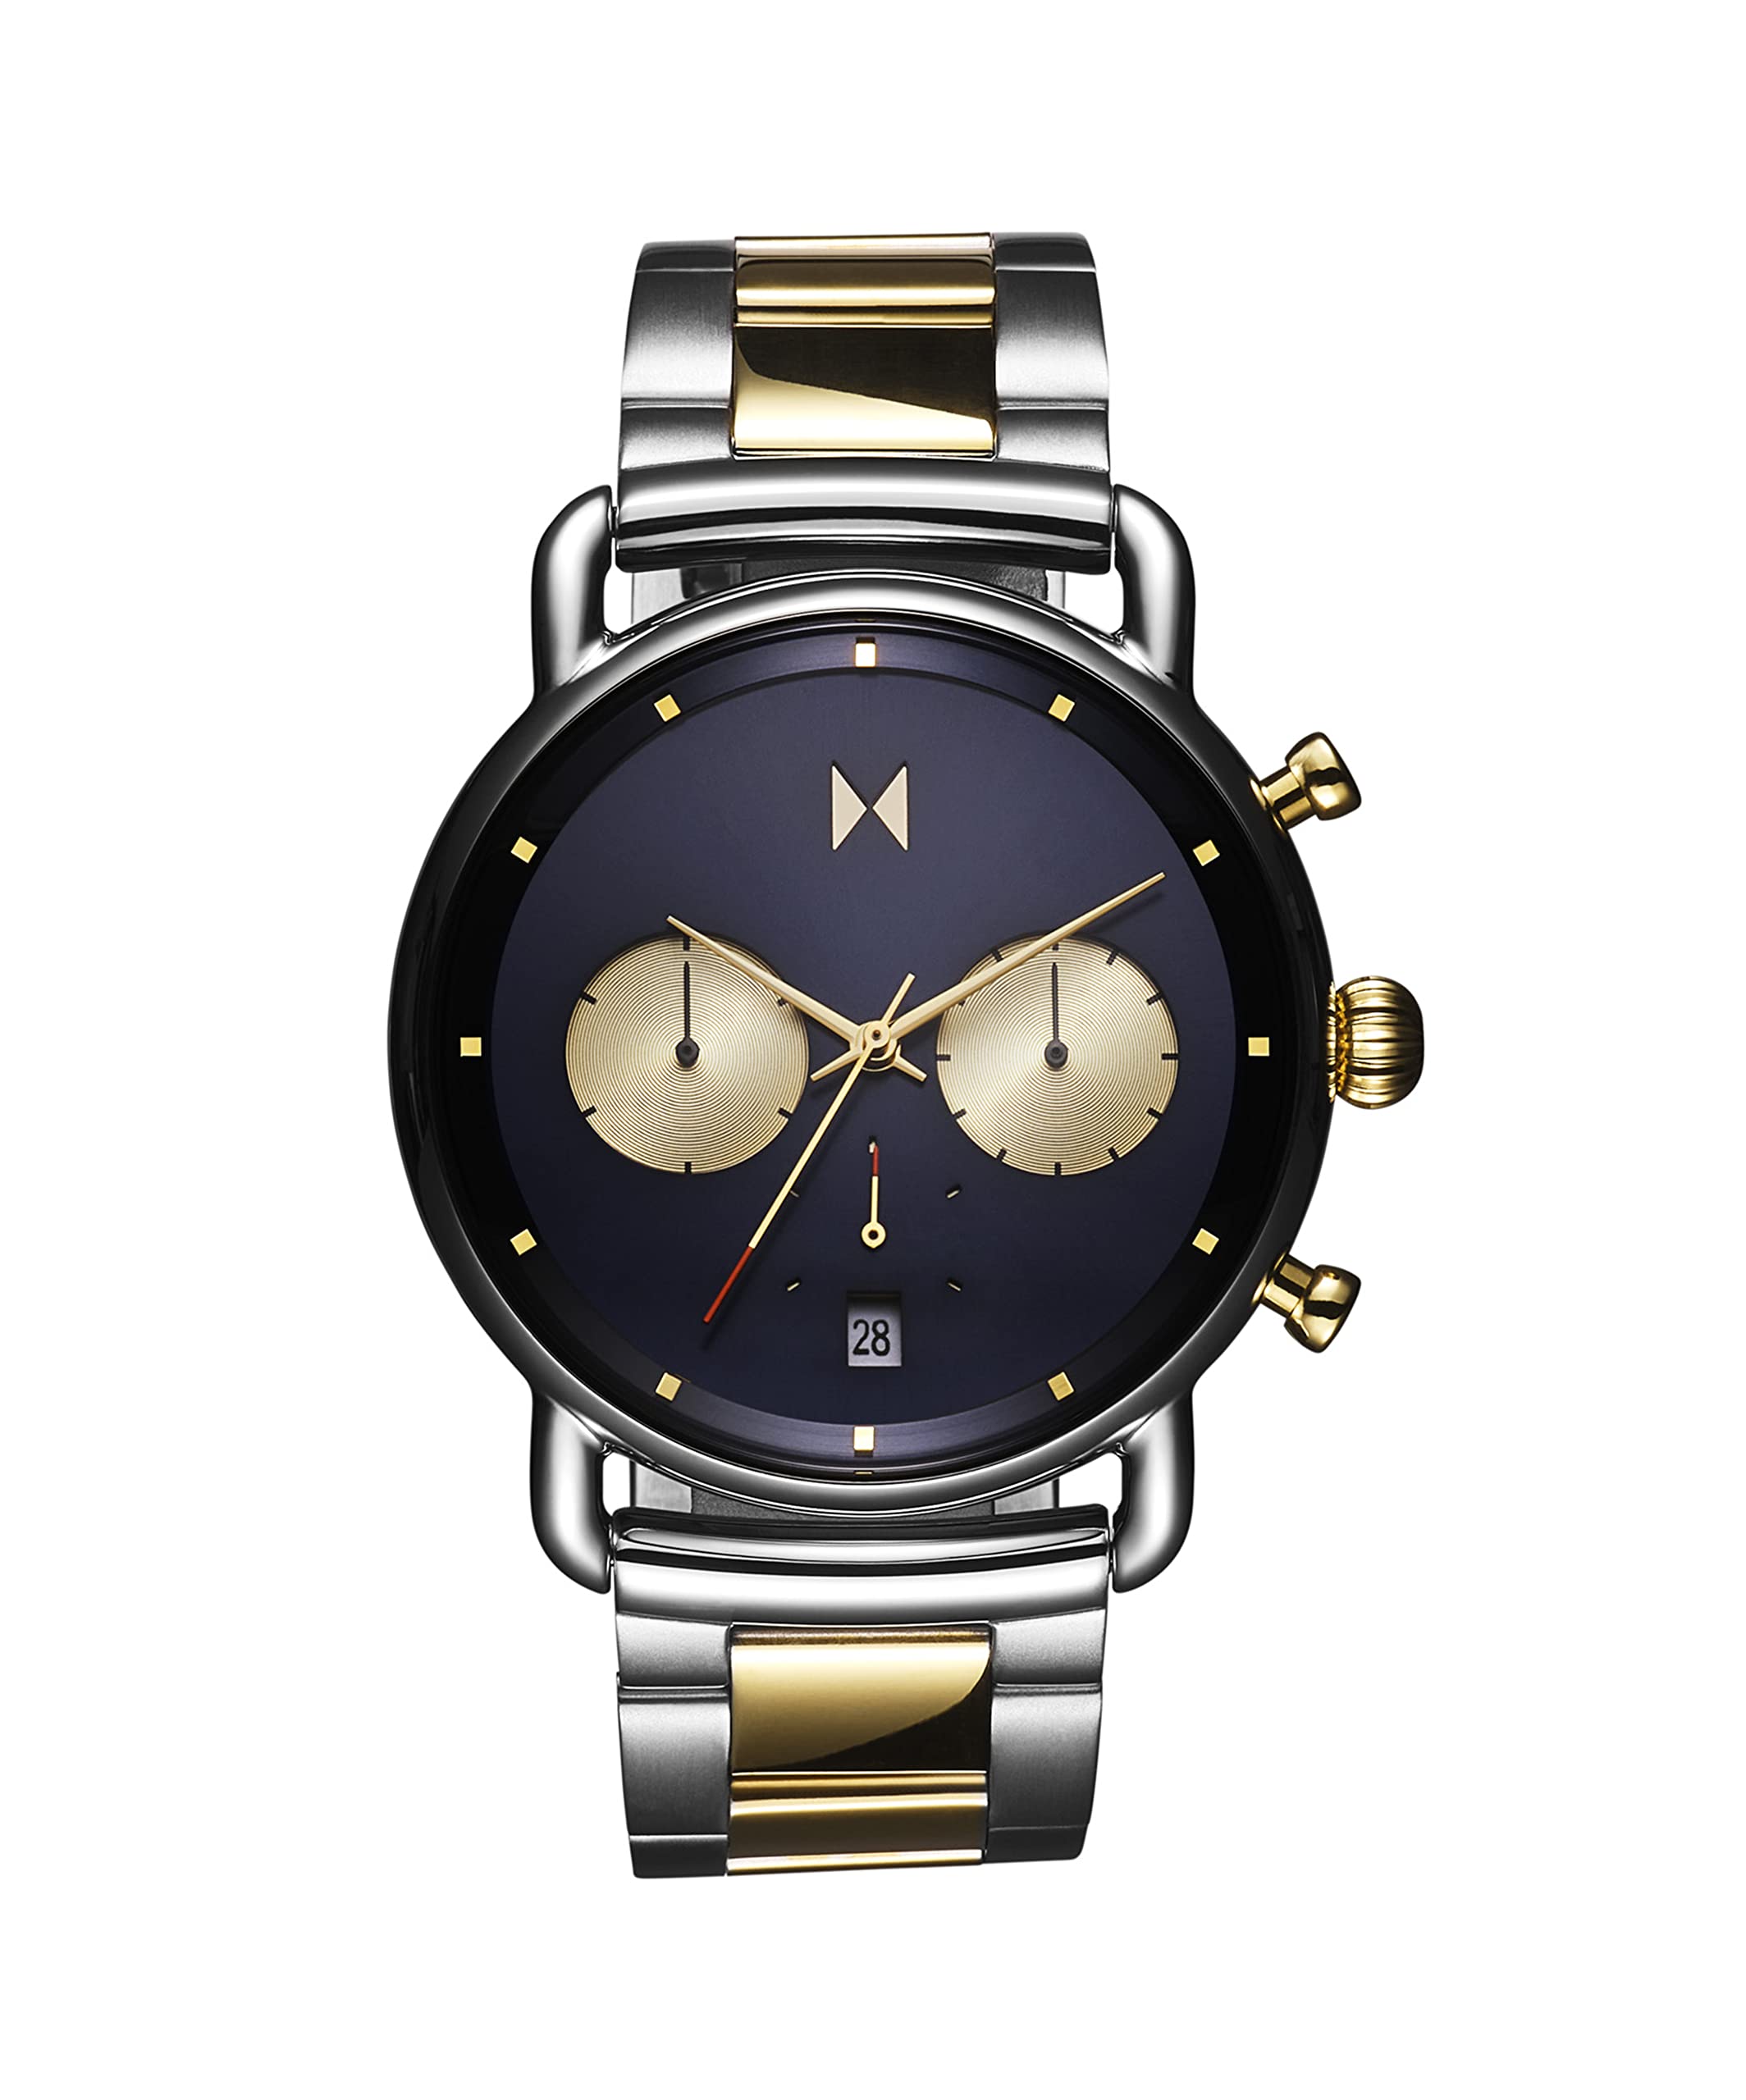 MVMT Blacktop II Analog Armbanduhr - Vintage Chronograph Uhr für Männer - Wasserdicht Uhr 5 ATM/50 Meter - Premium Minimalistische Herrenuhr - Edelstahl - Austauschbare Bänder - 42mm & 47mm, Cali